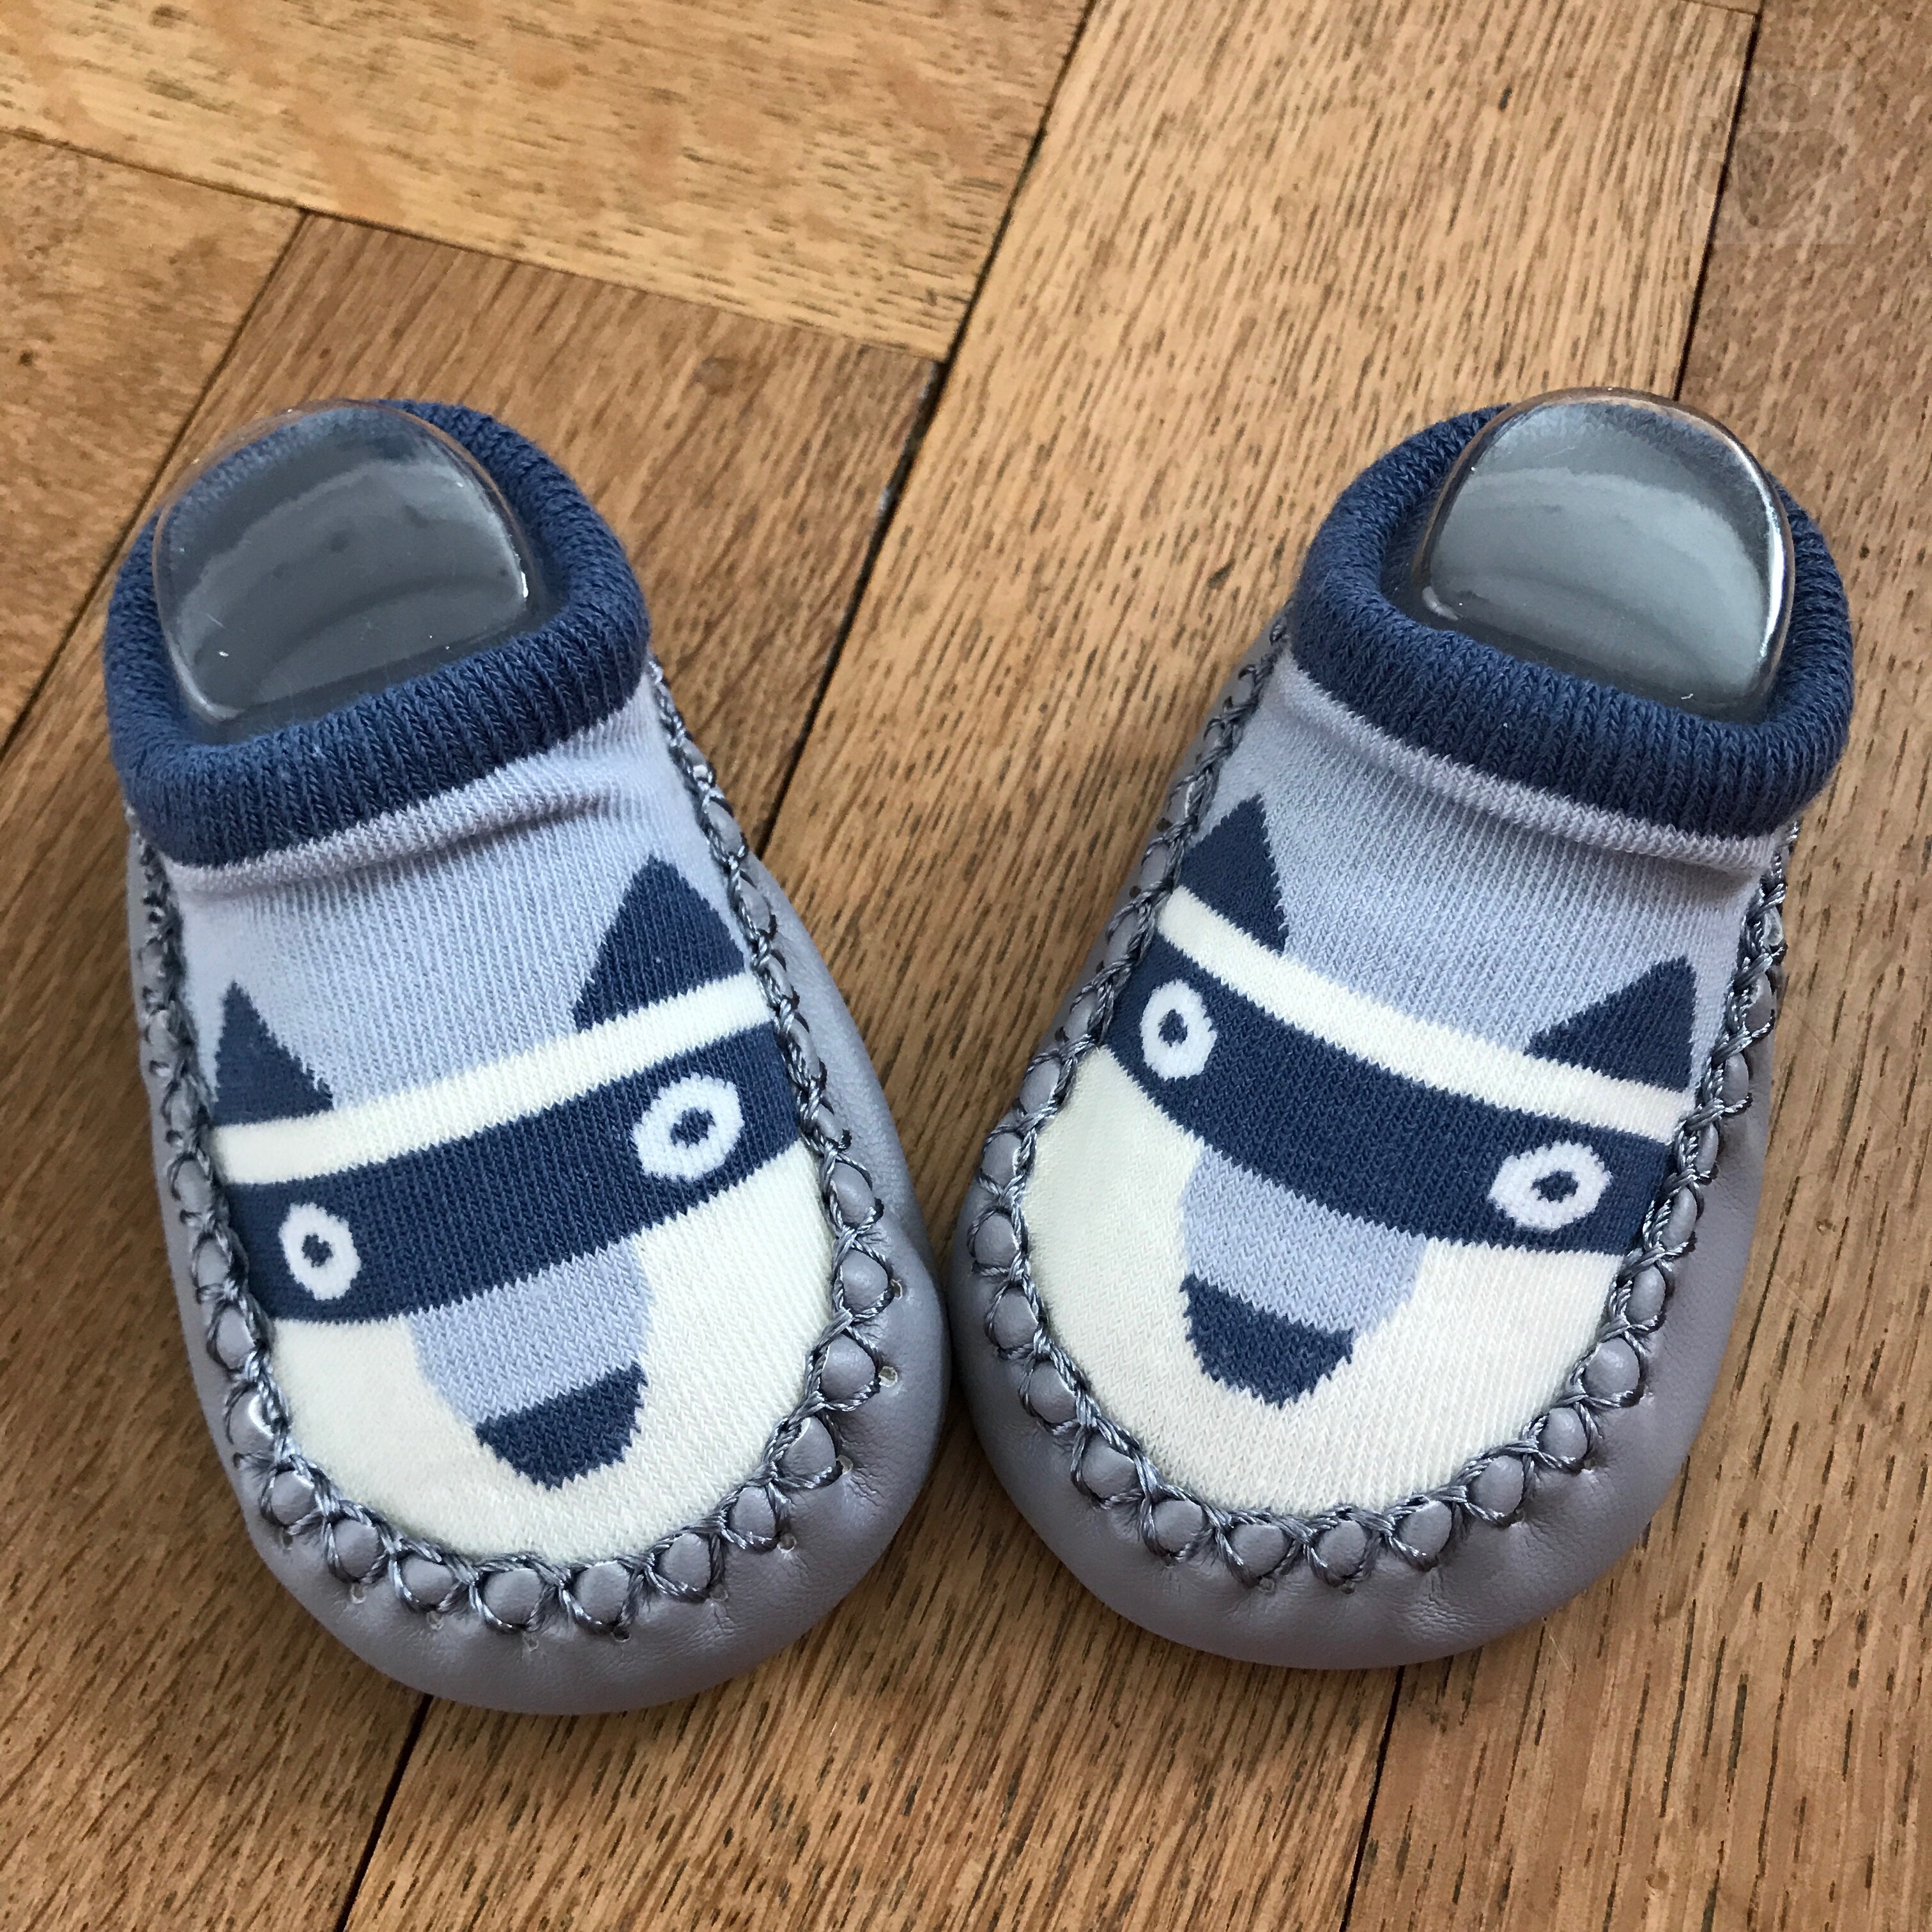 Süsse Baby-/Kleinkinder Finken/Schuhe in der Grösse 11cm "blauer Fuchs"